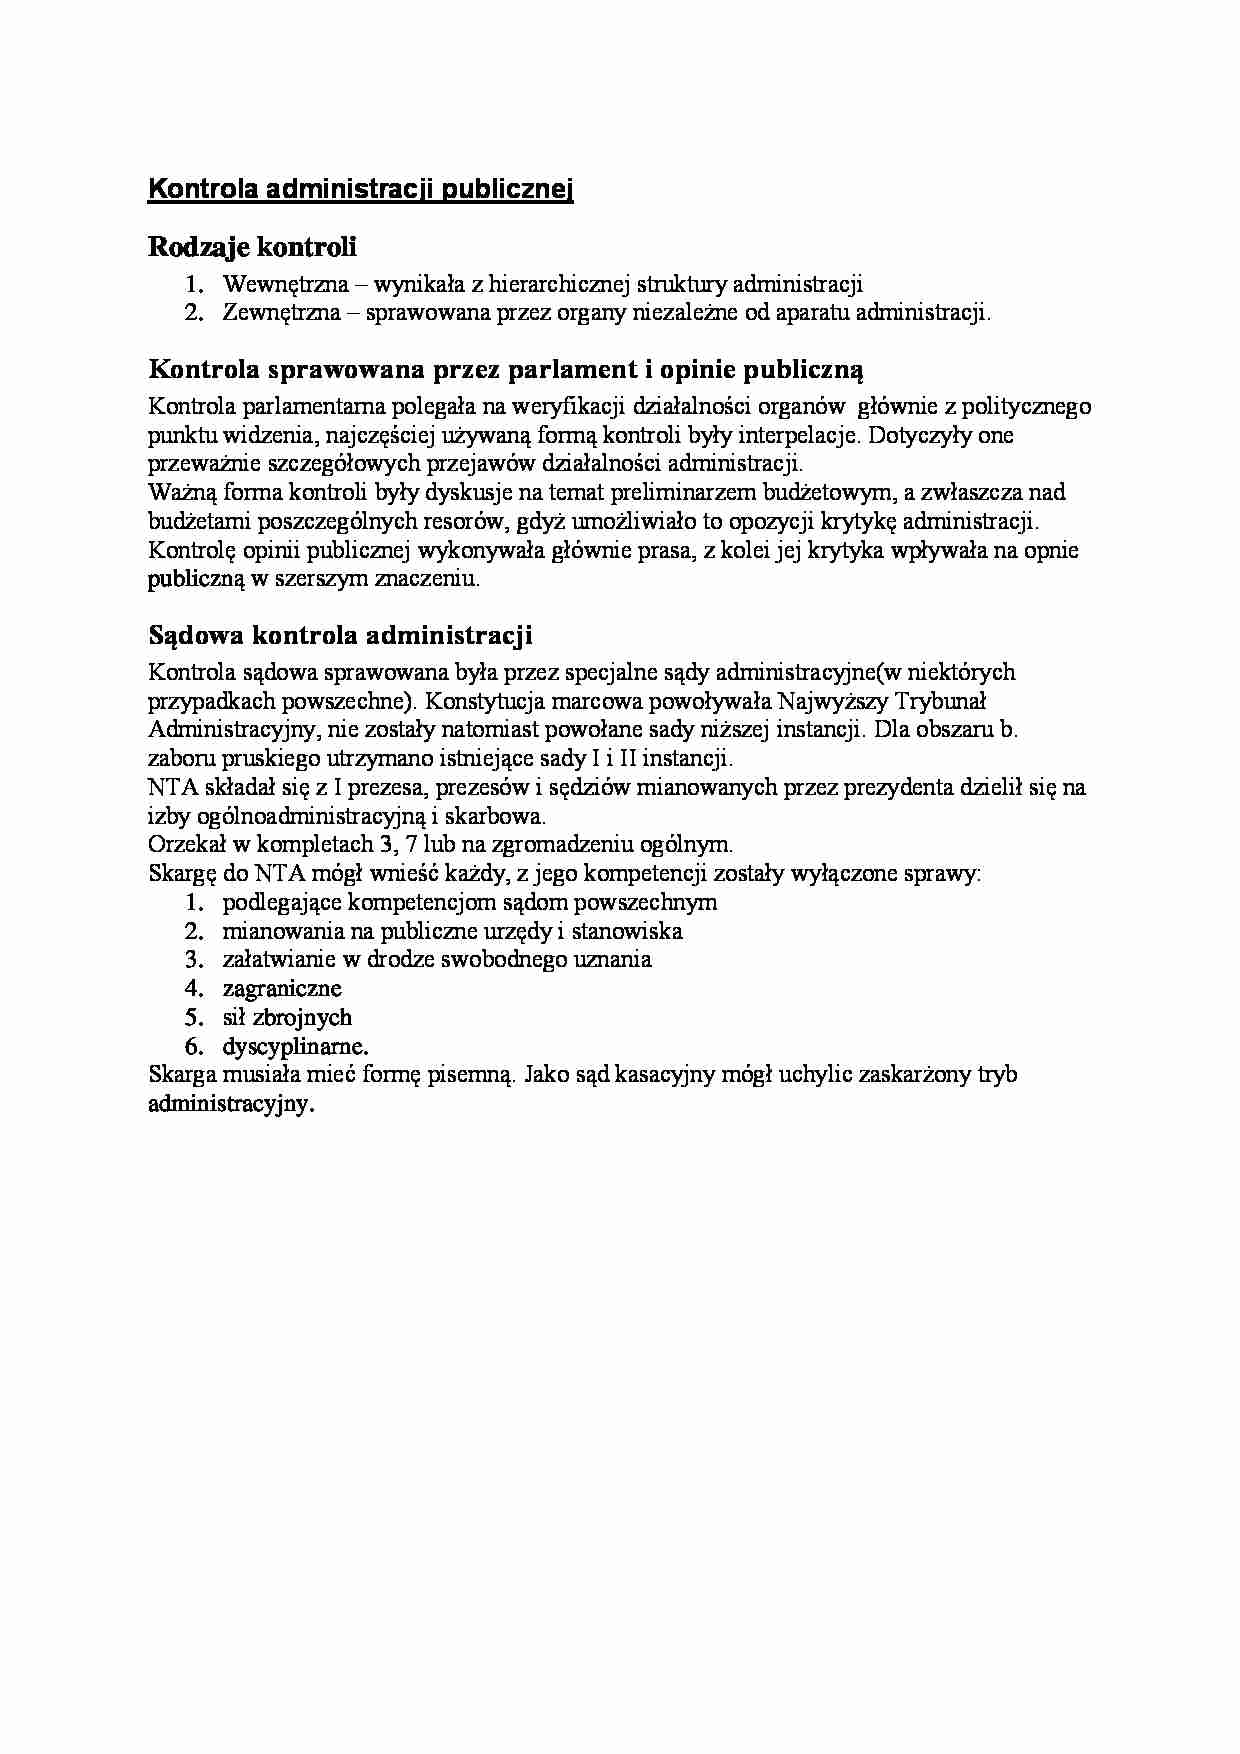 II Rzeczpospolita - Kontrola administracji publicznej - strona 1